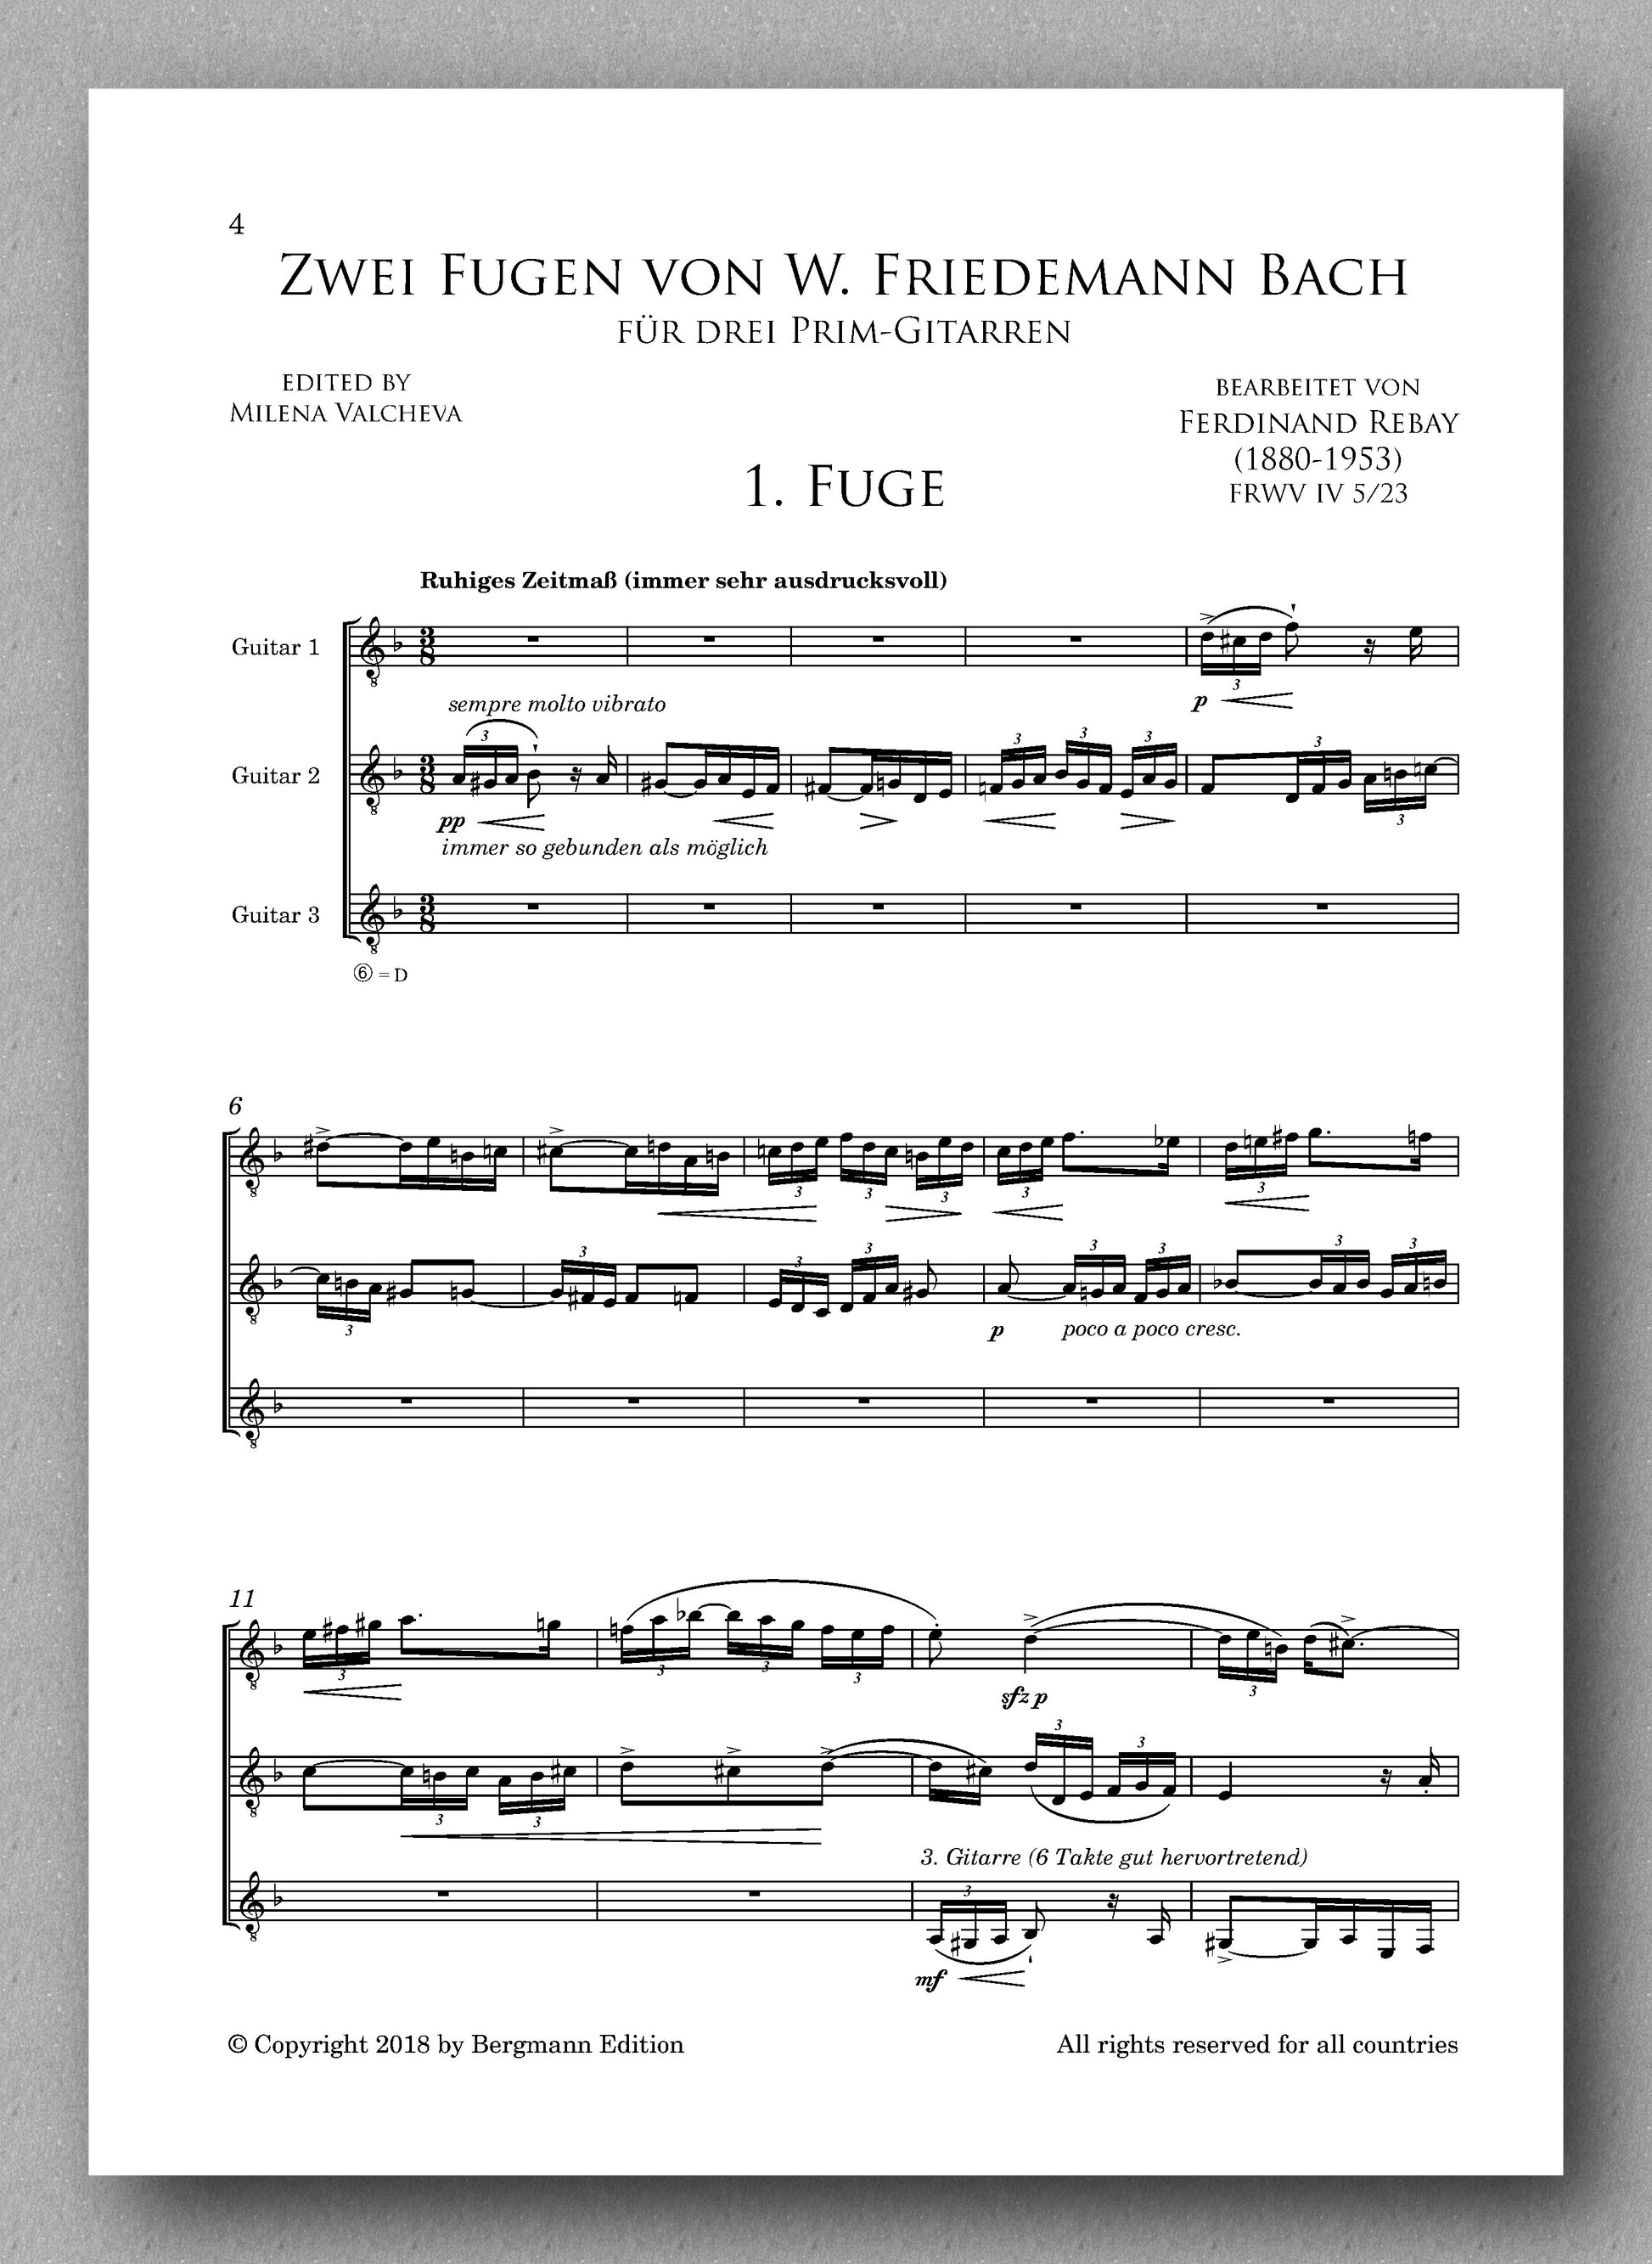 Rebay [078], Zwei Fugen von W. Friedemann Bach - preview of the score 1